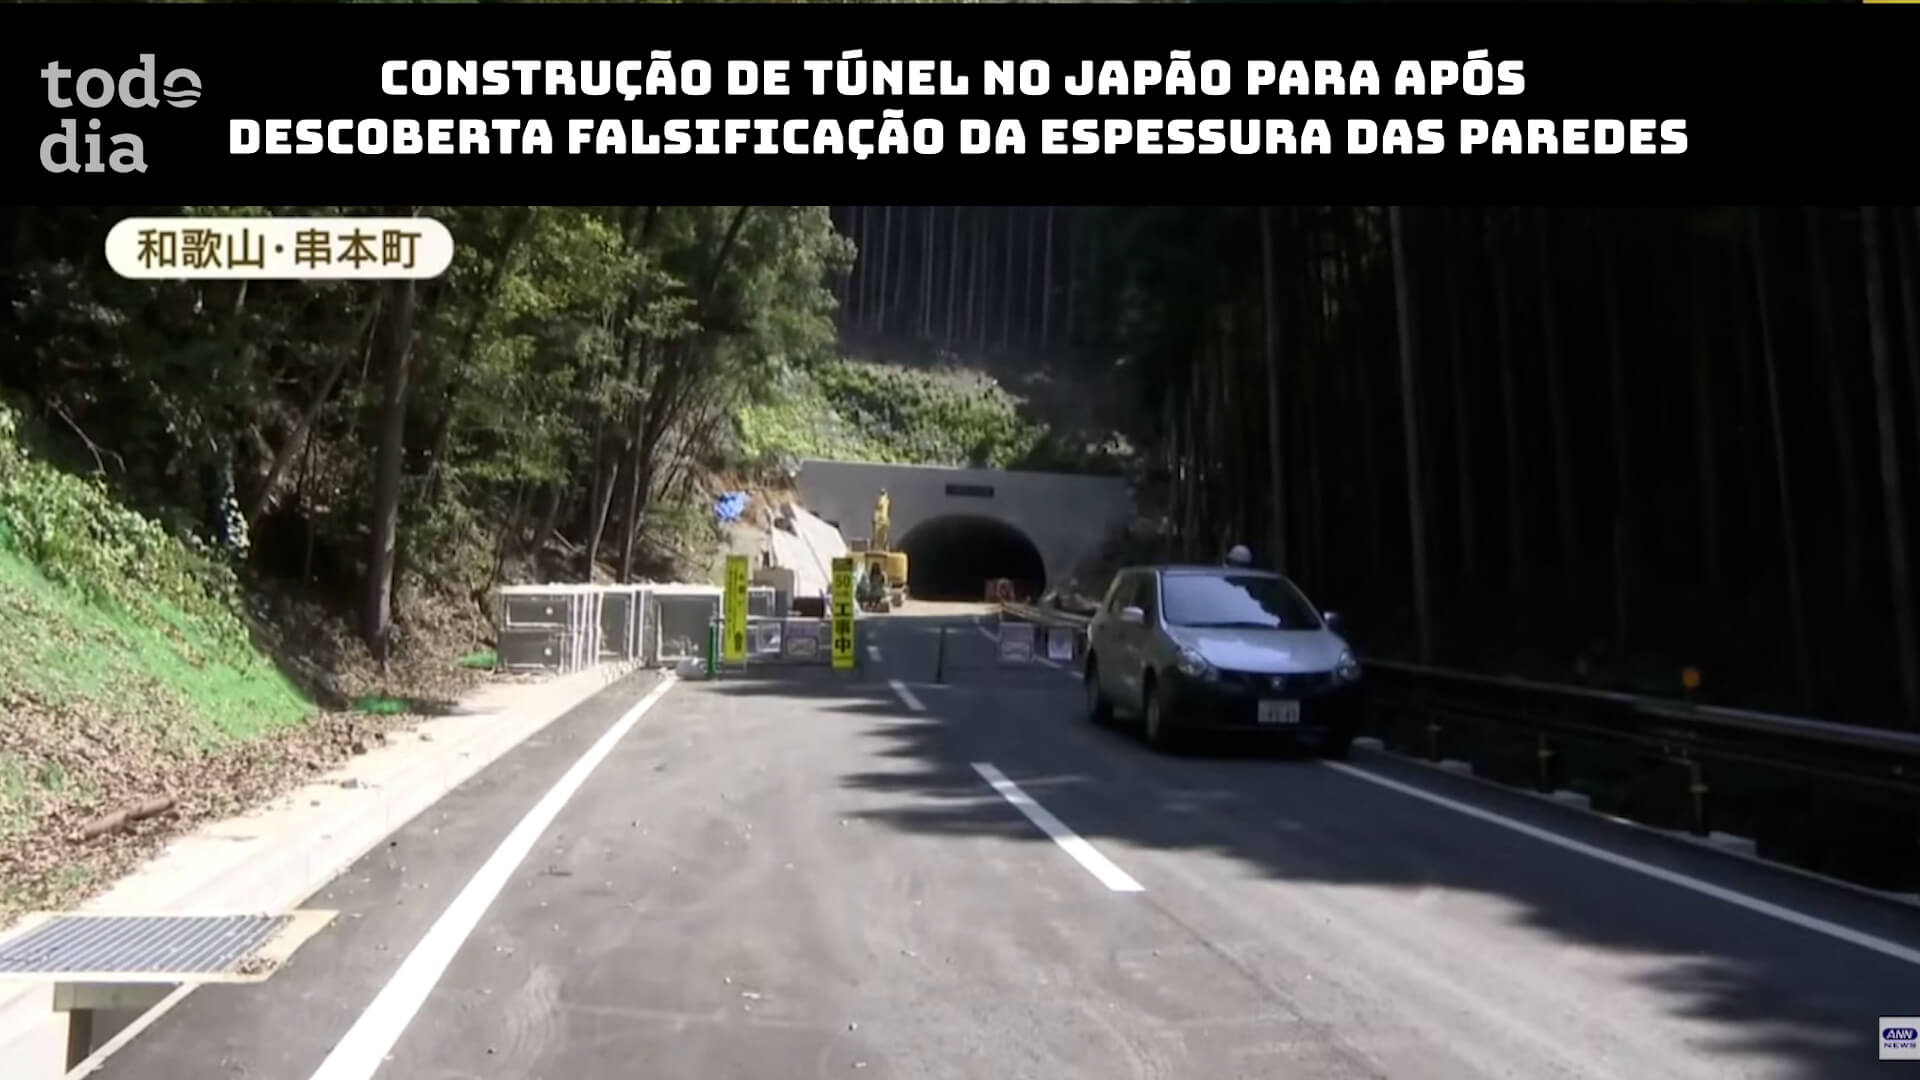 Construção de túnel no Japão para após descoberta falsificação da espessura das paredes